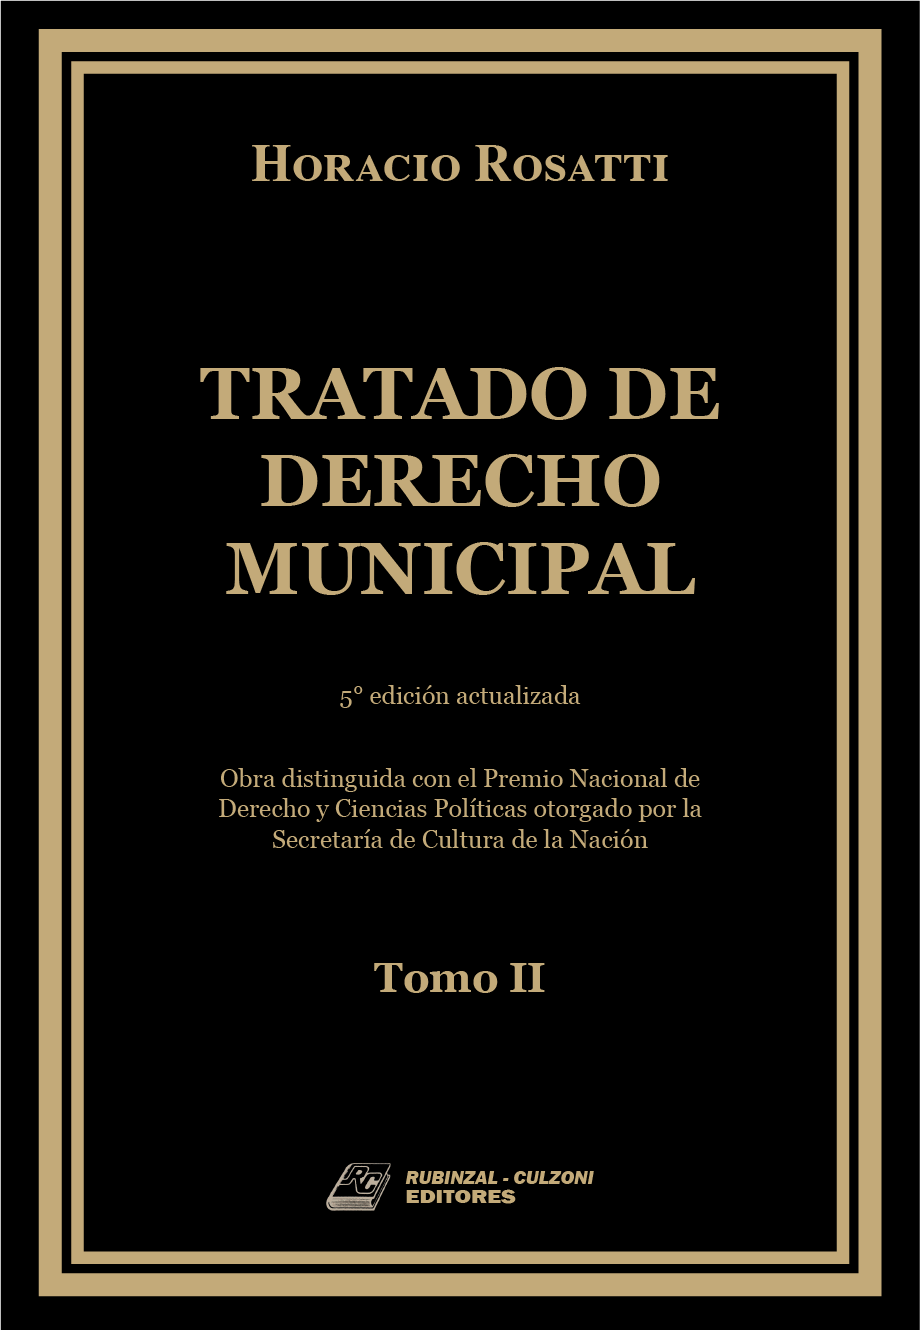 Tratado de Derecho Municipal. - Tomo II. 5ª edición actualizada